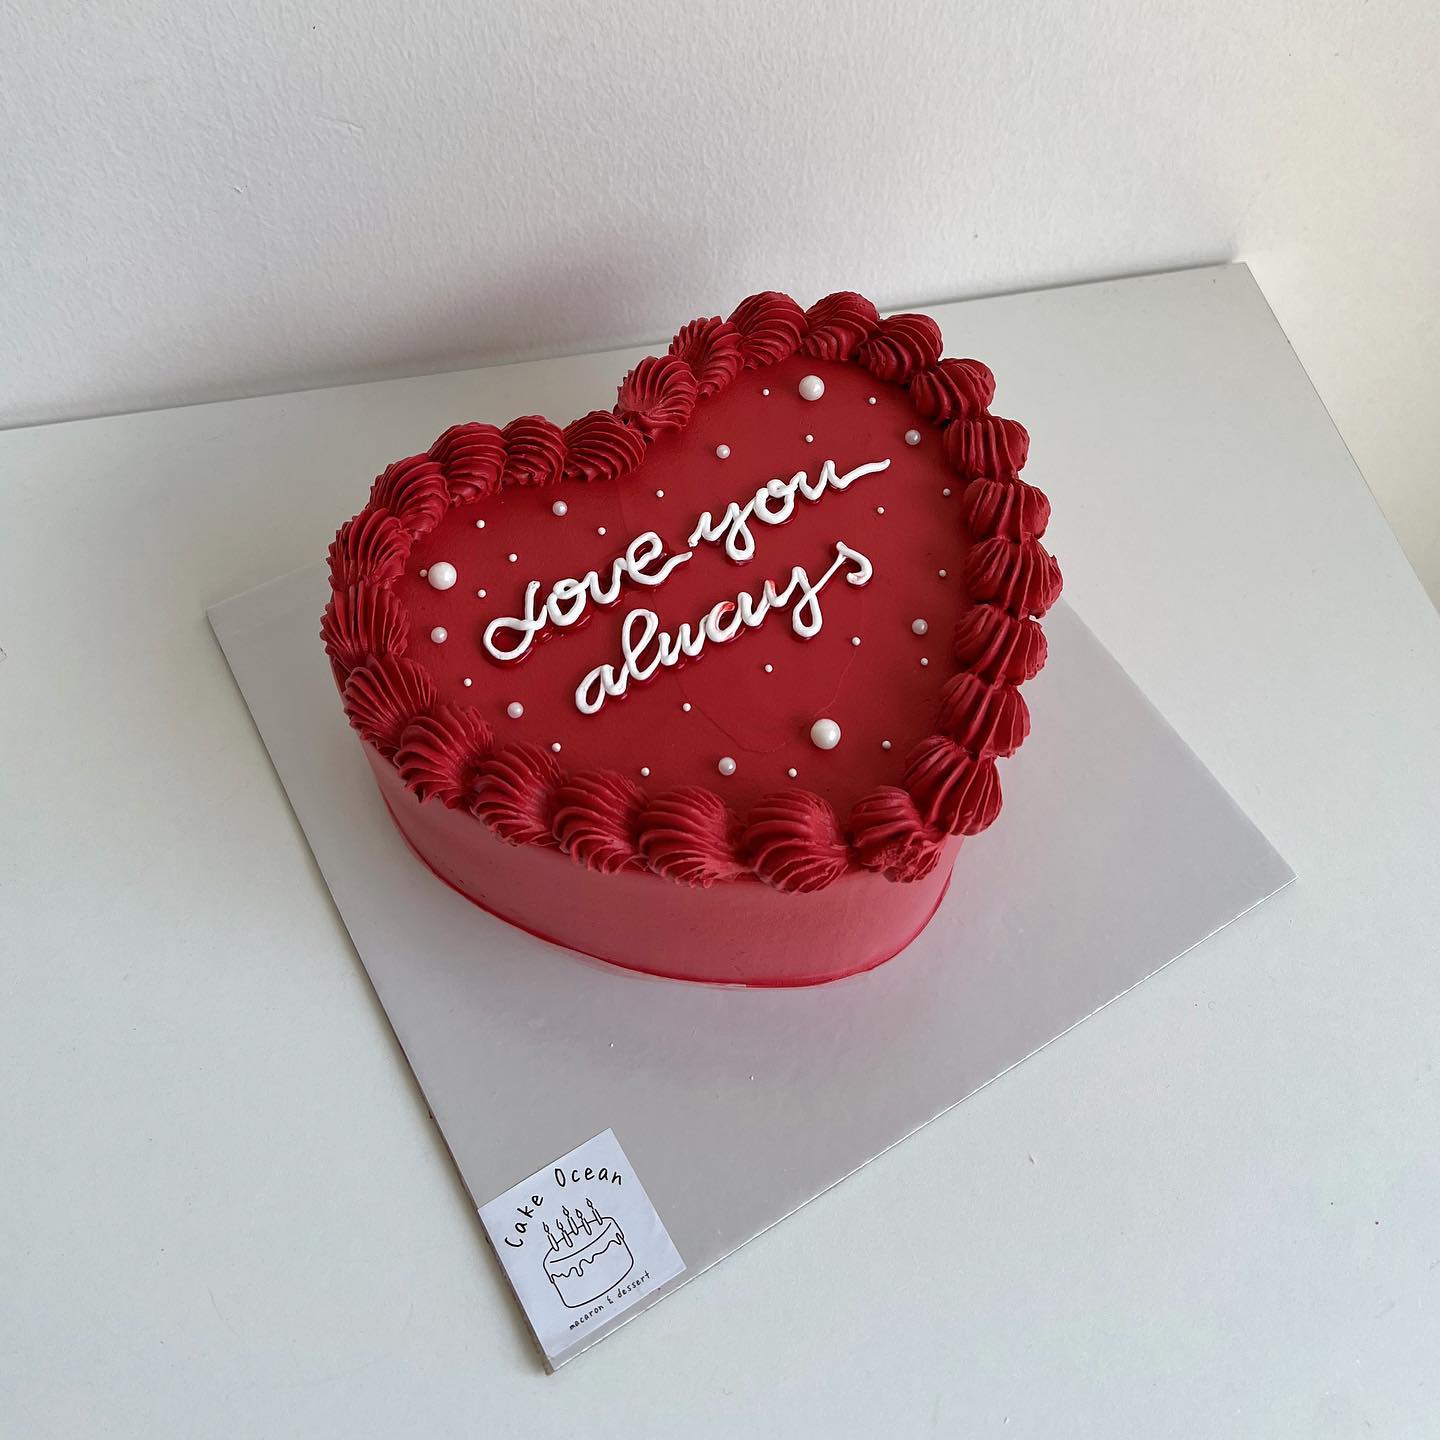 Bánh kem Valentine Socola cho một ngày lễ tình nhân thật ngọt ngào